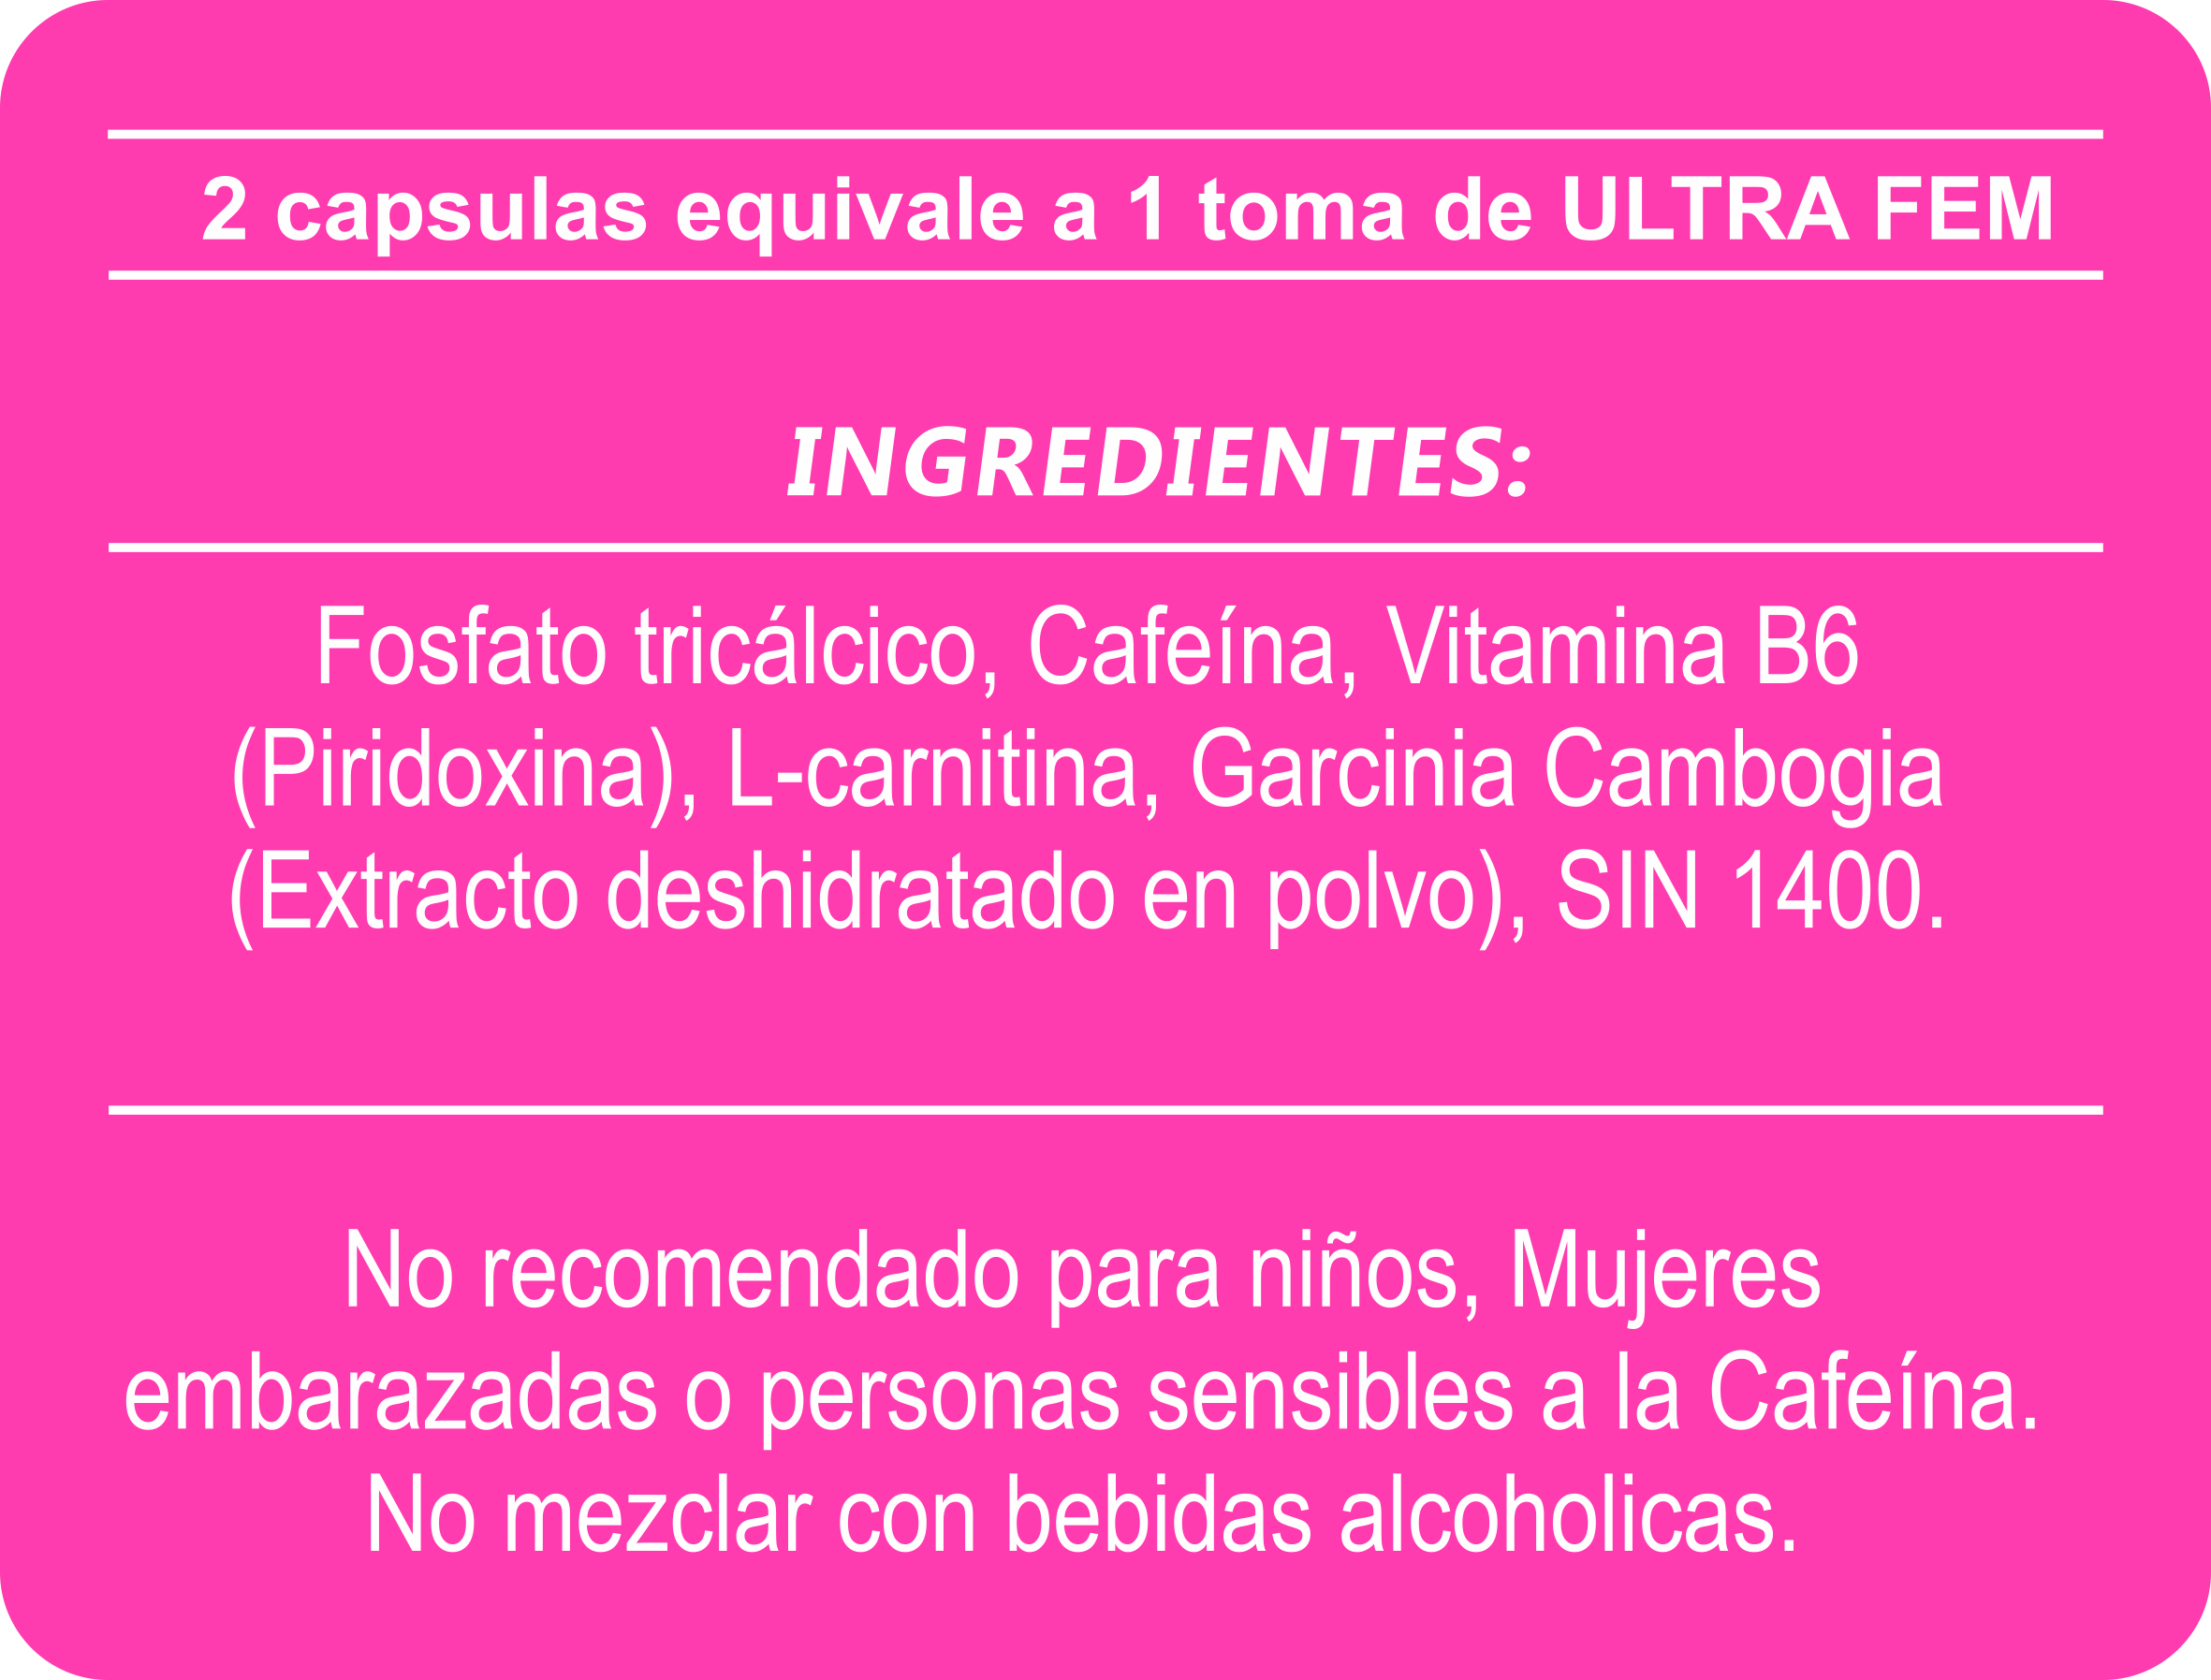 Tabla Nutricional ULTRA FEM